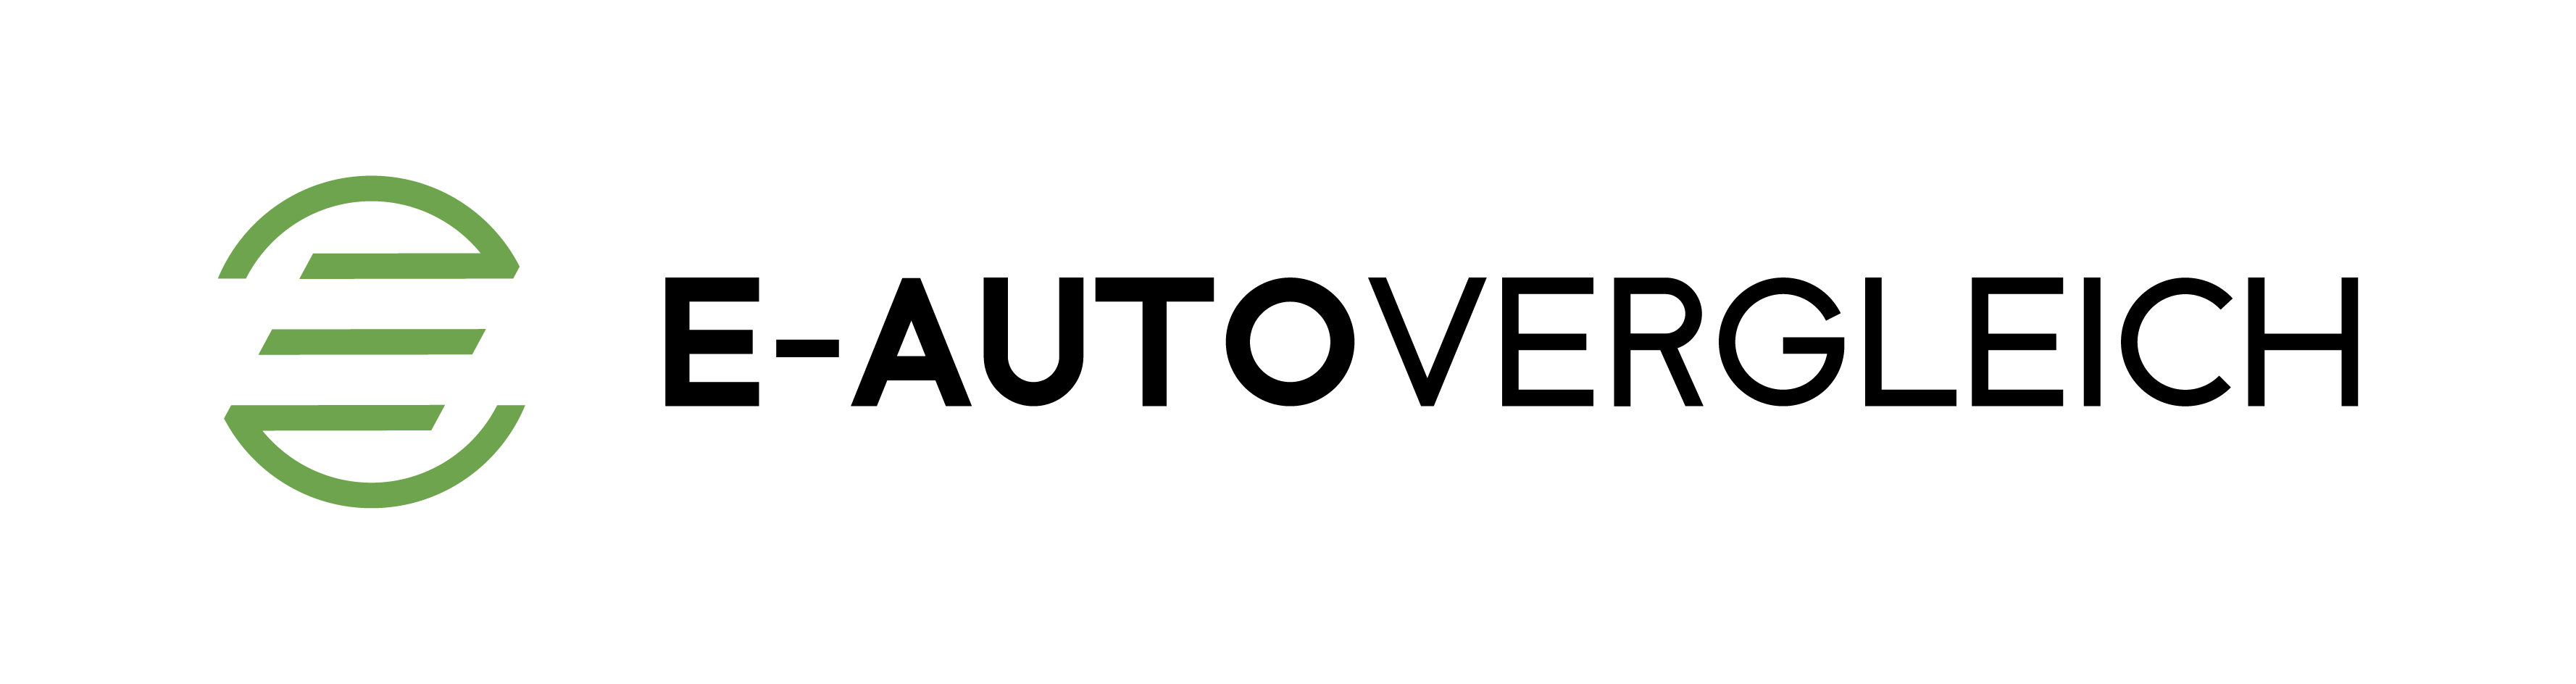 e-autovergleich.com Logo